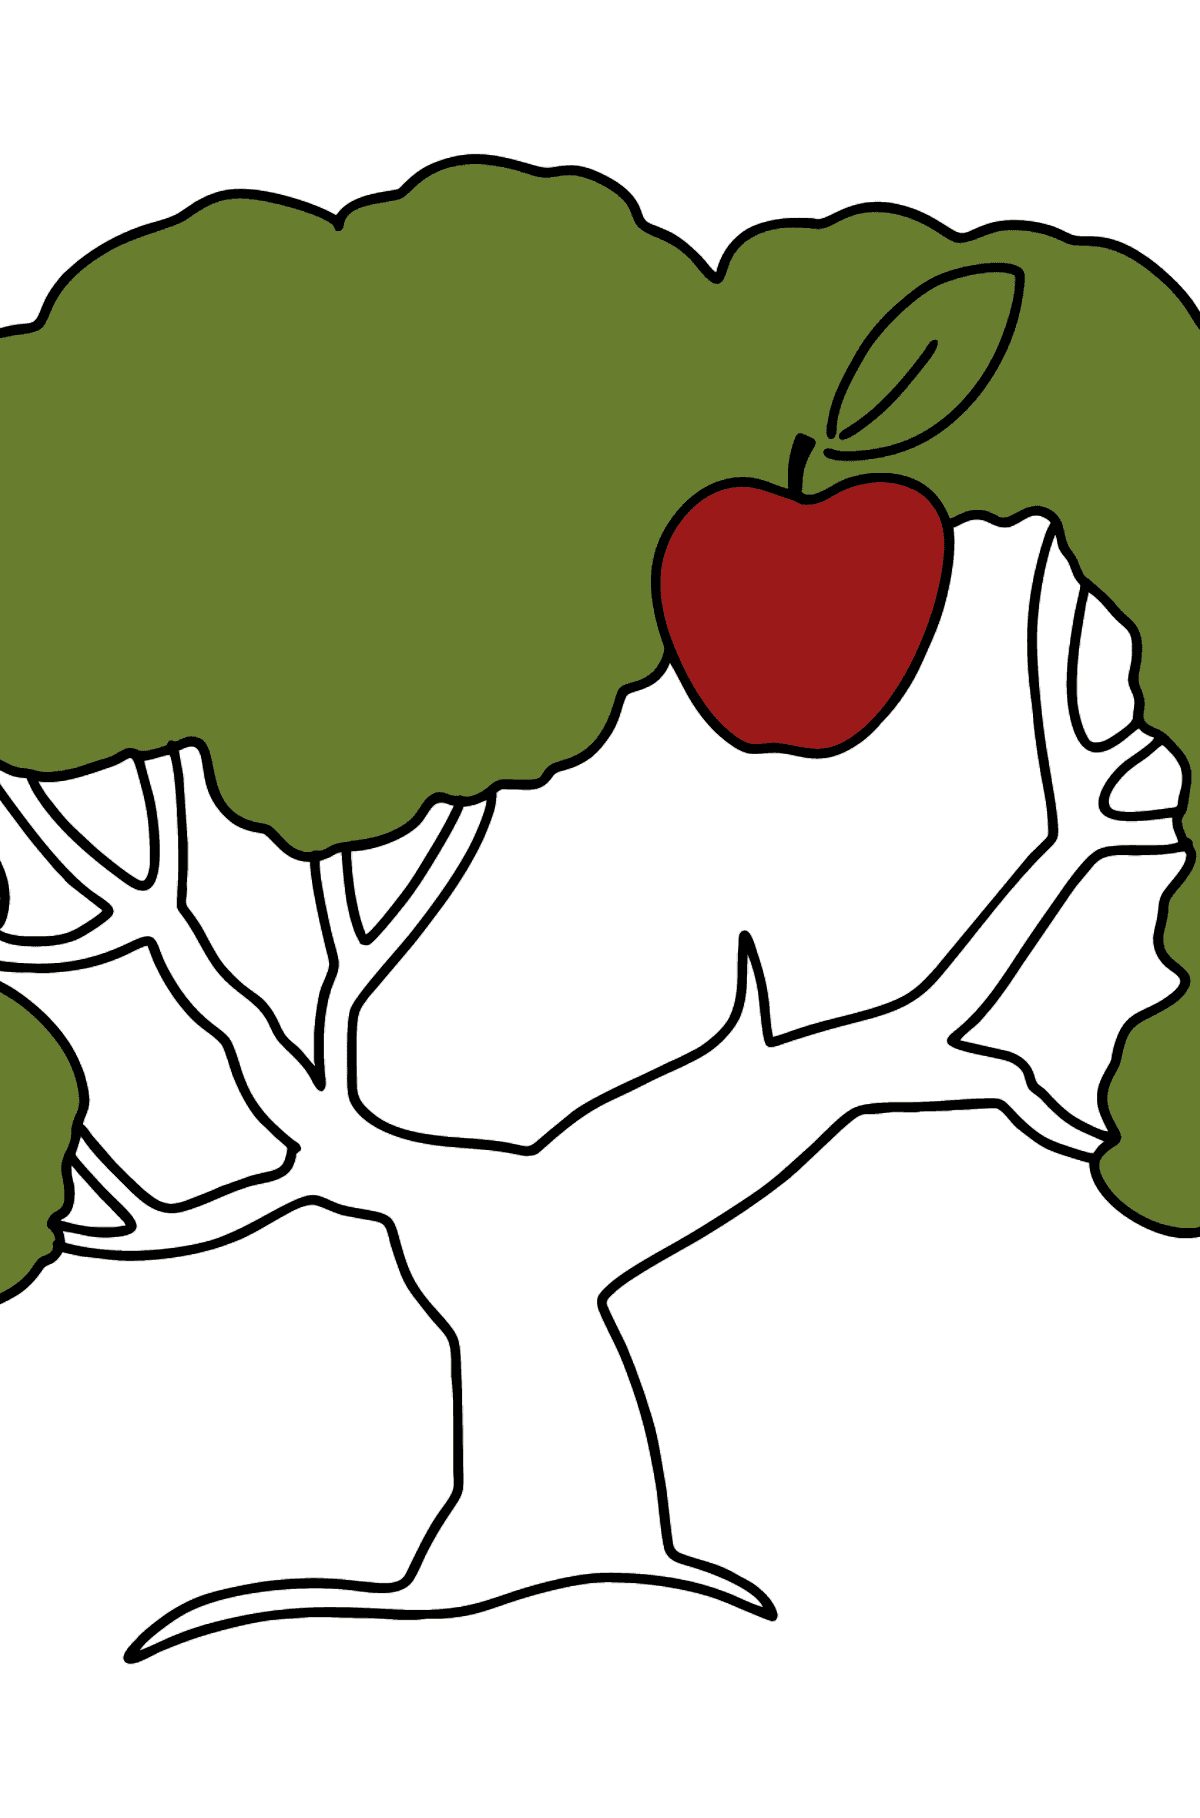 Mewarnai gambar pohon apel saja - Mewarnai gambar untuk anak-anak